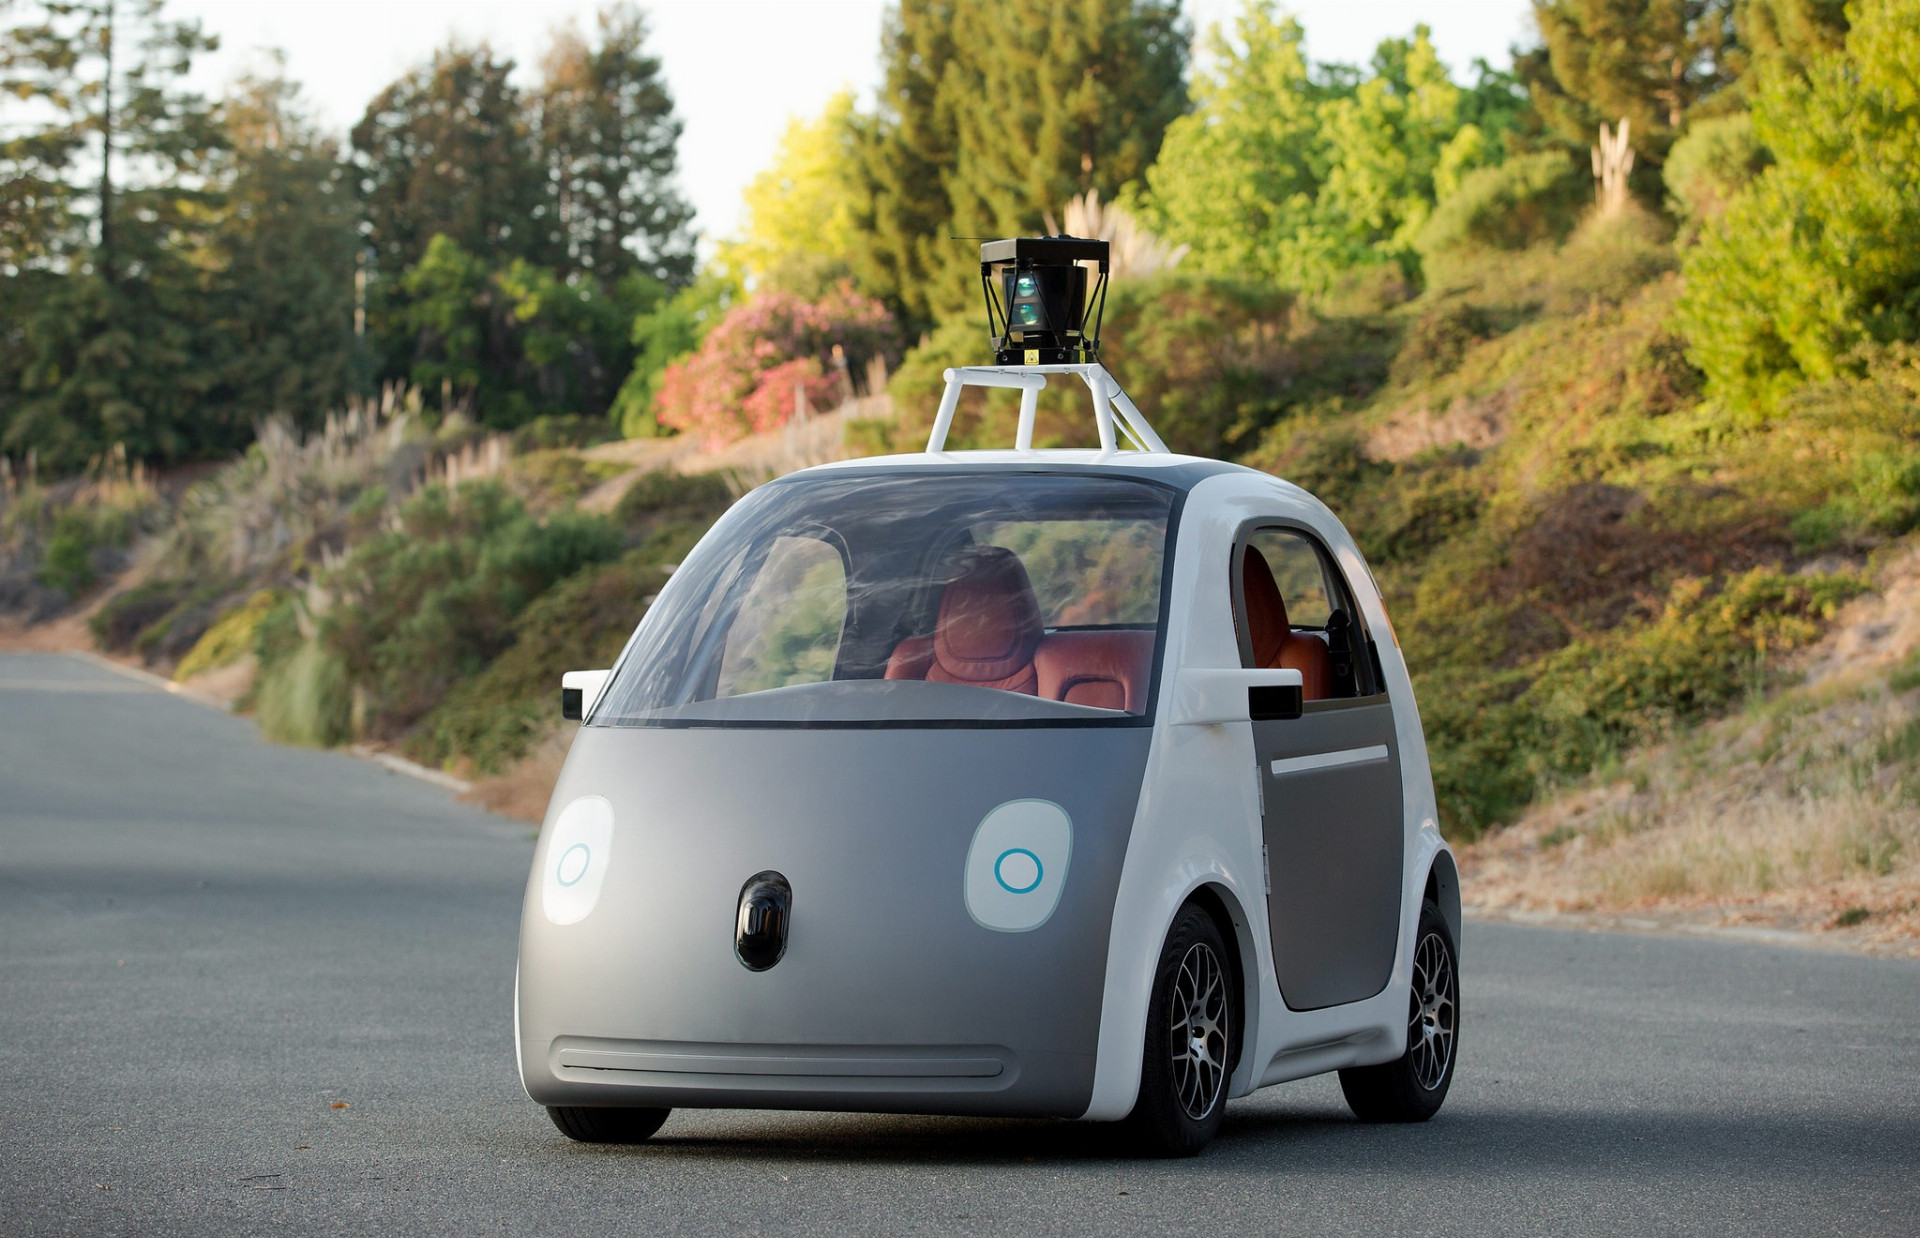 Autonómne automobily od Googlu sa začínajú objavovať na cestách. Budú aj tie vybavené špeciálnou kapotou?